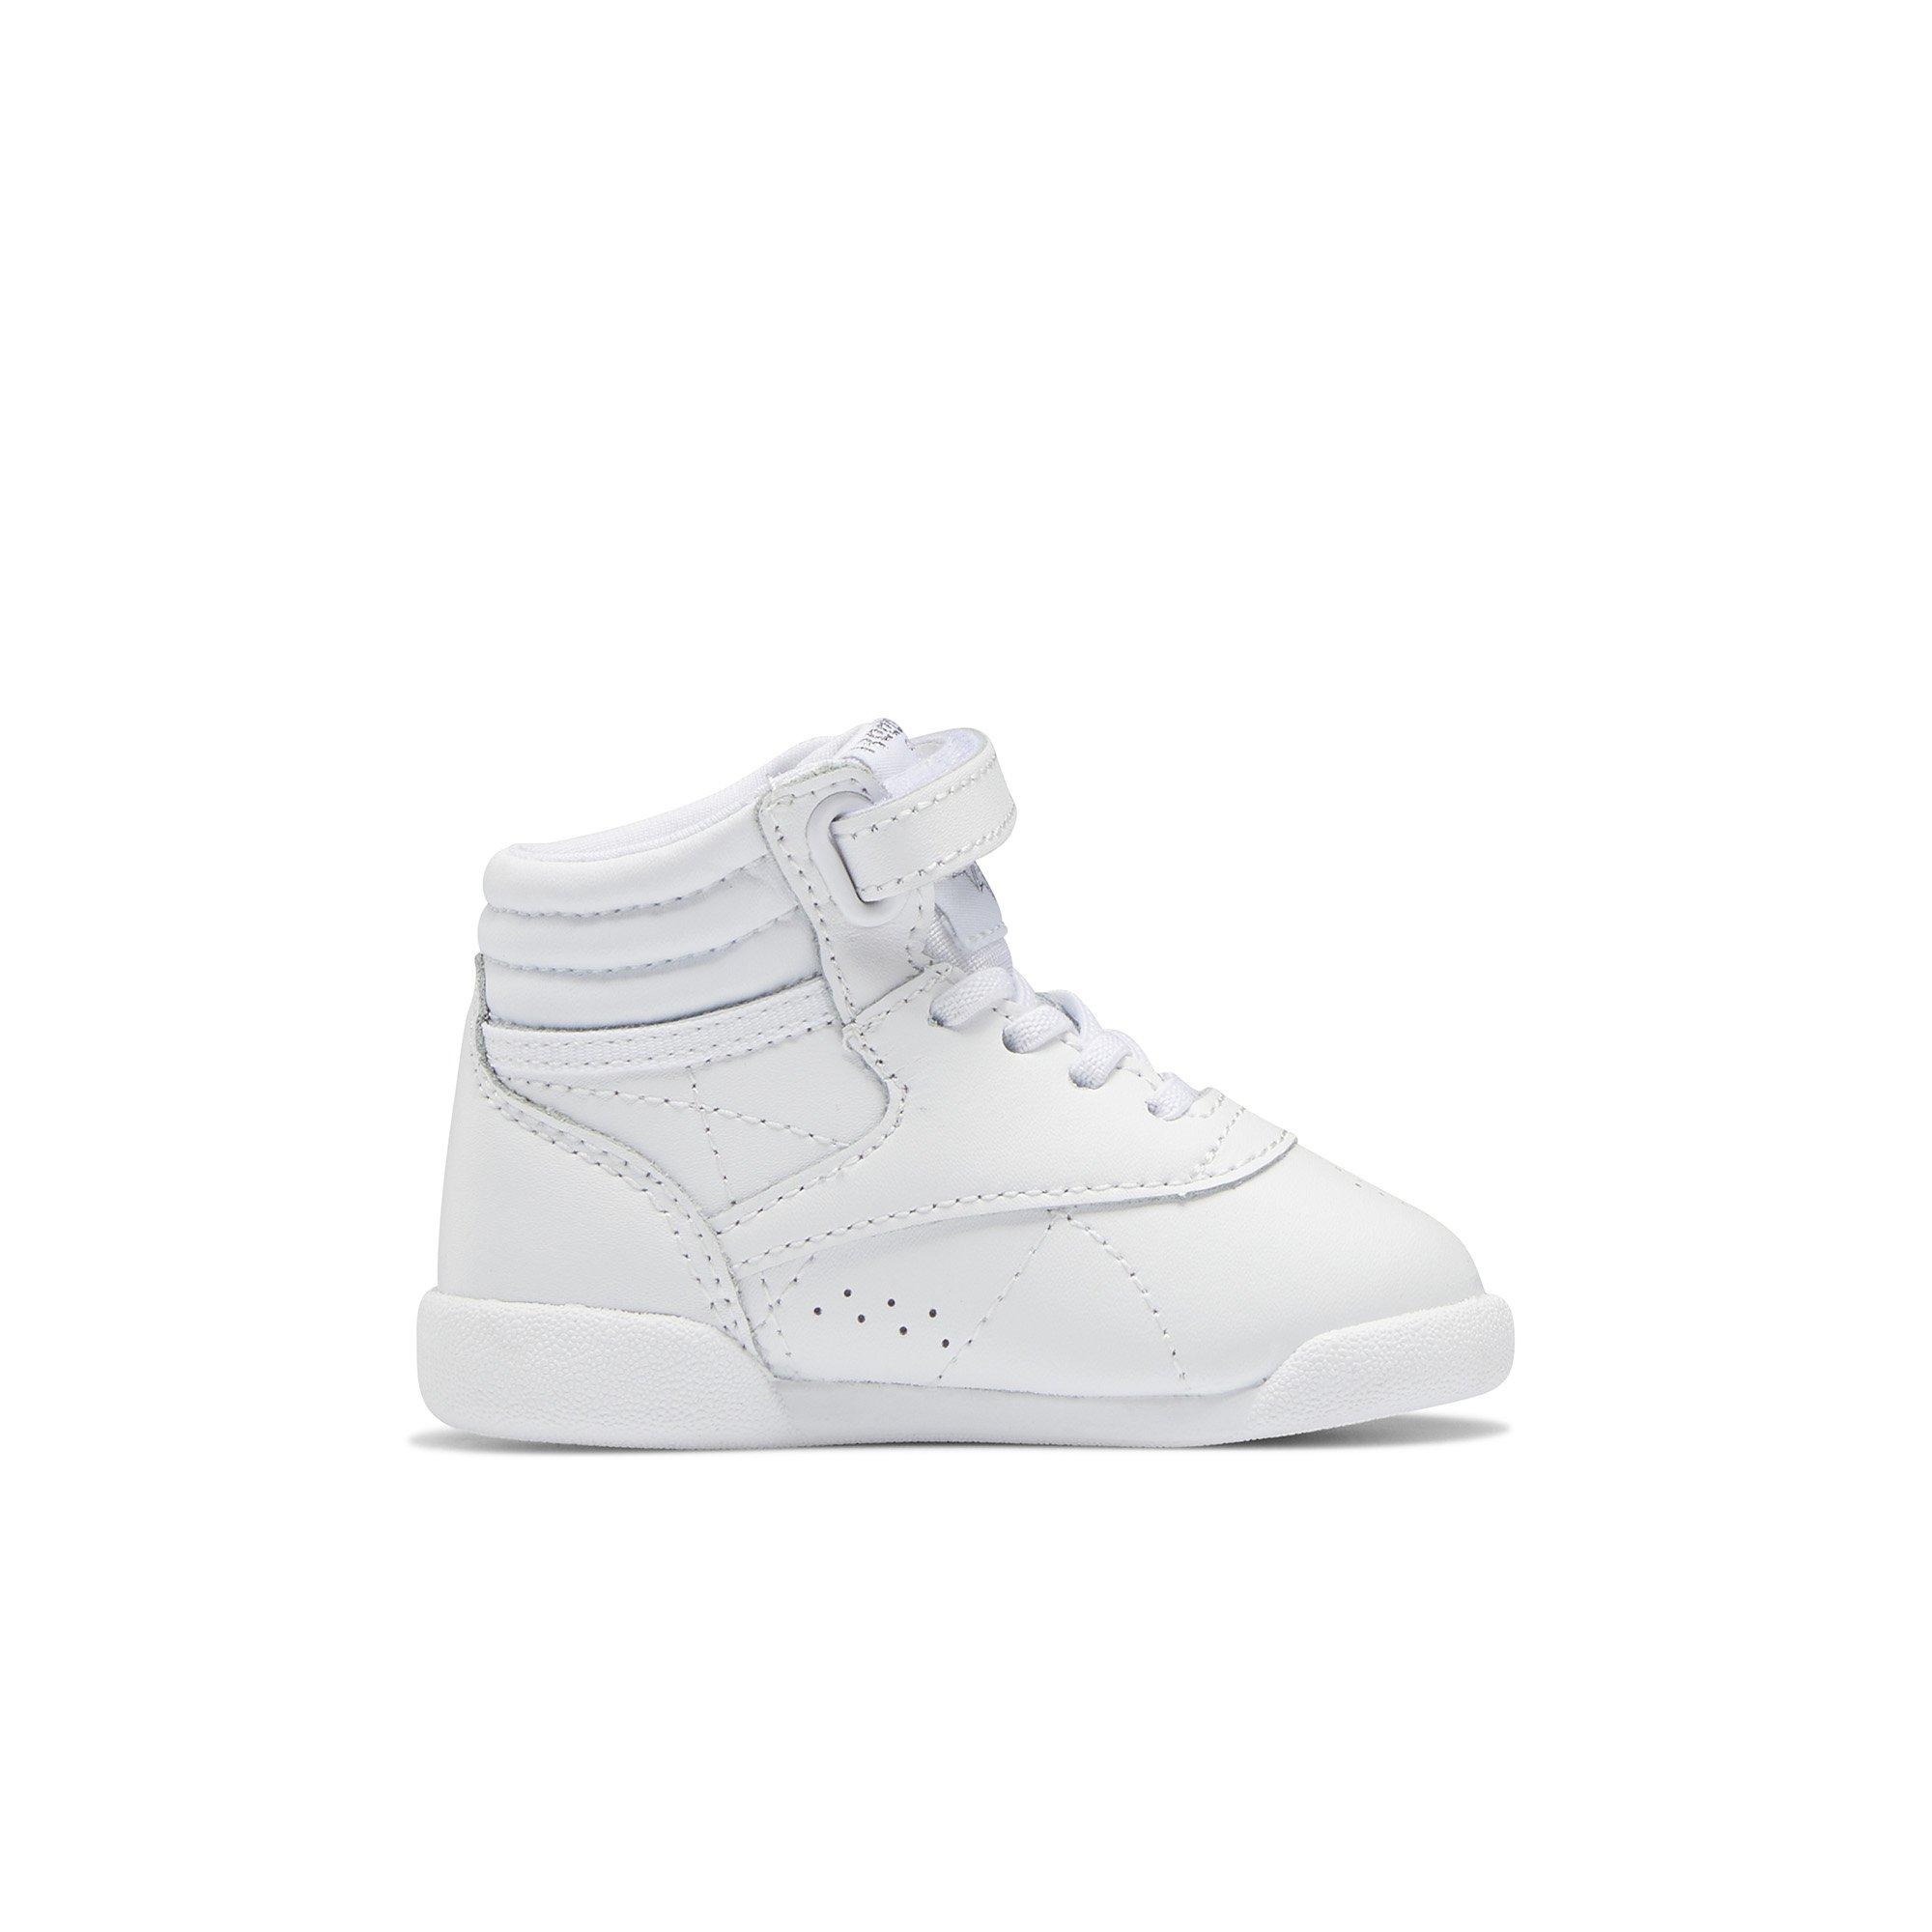 Reebok Freestyle Hi White/Ftwr White" Toddler Shoe